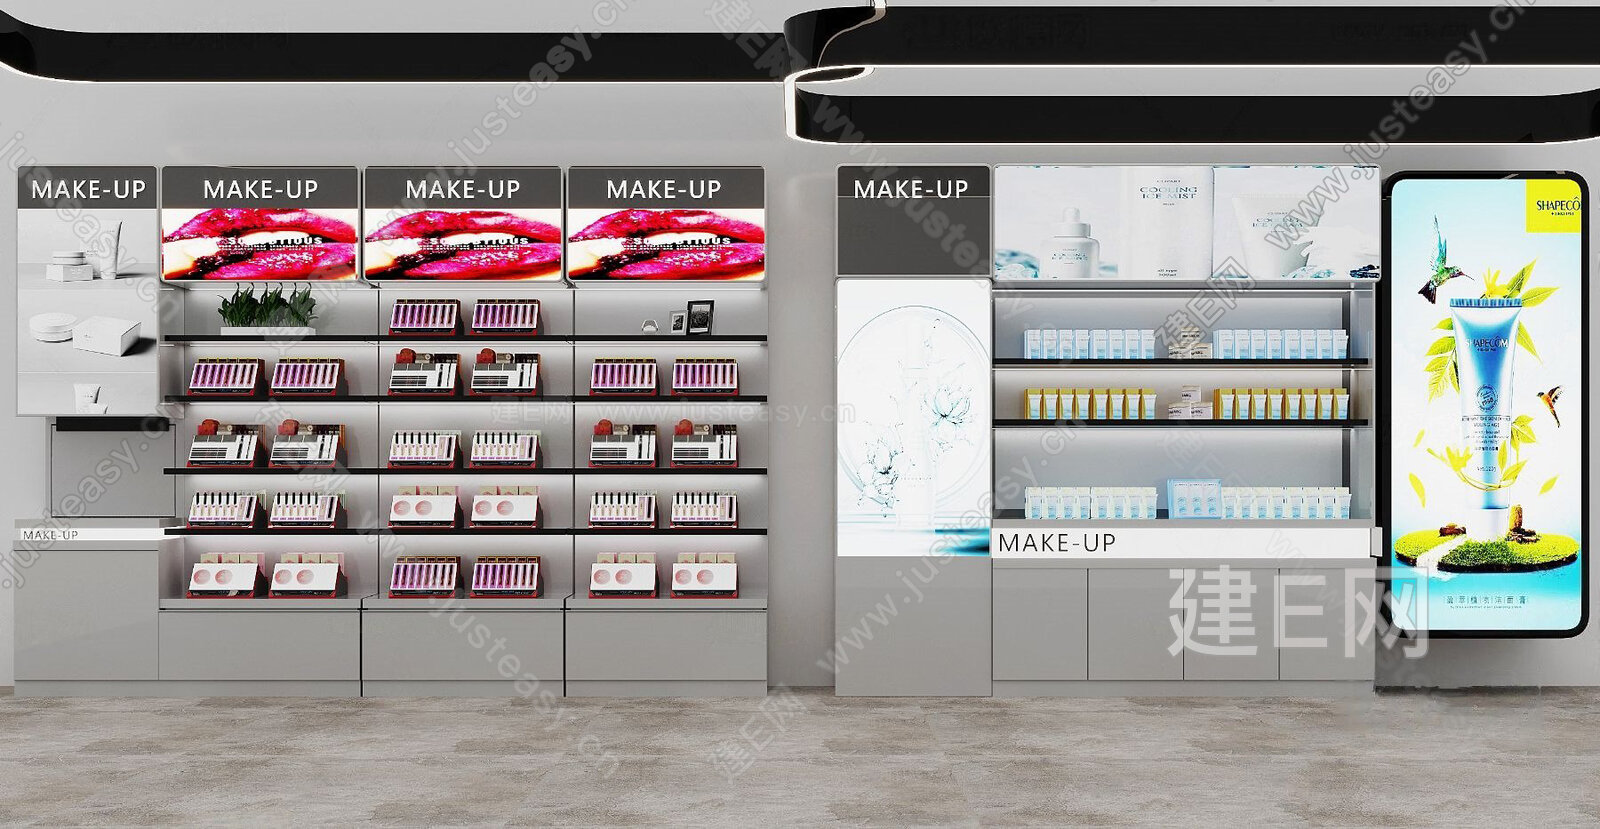 3D模型-现代化妆品货柜模型-M0003048410-炫云云模型网